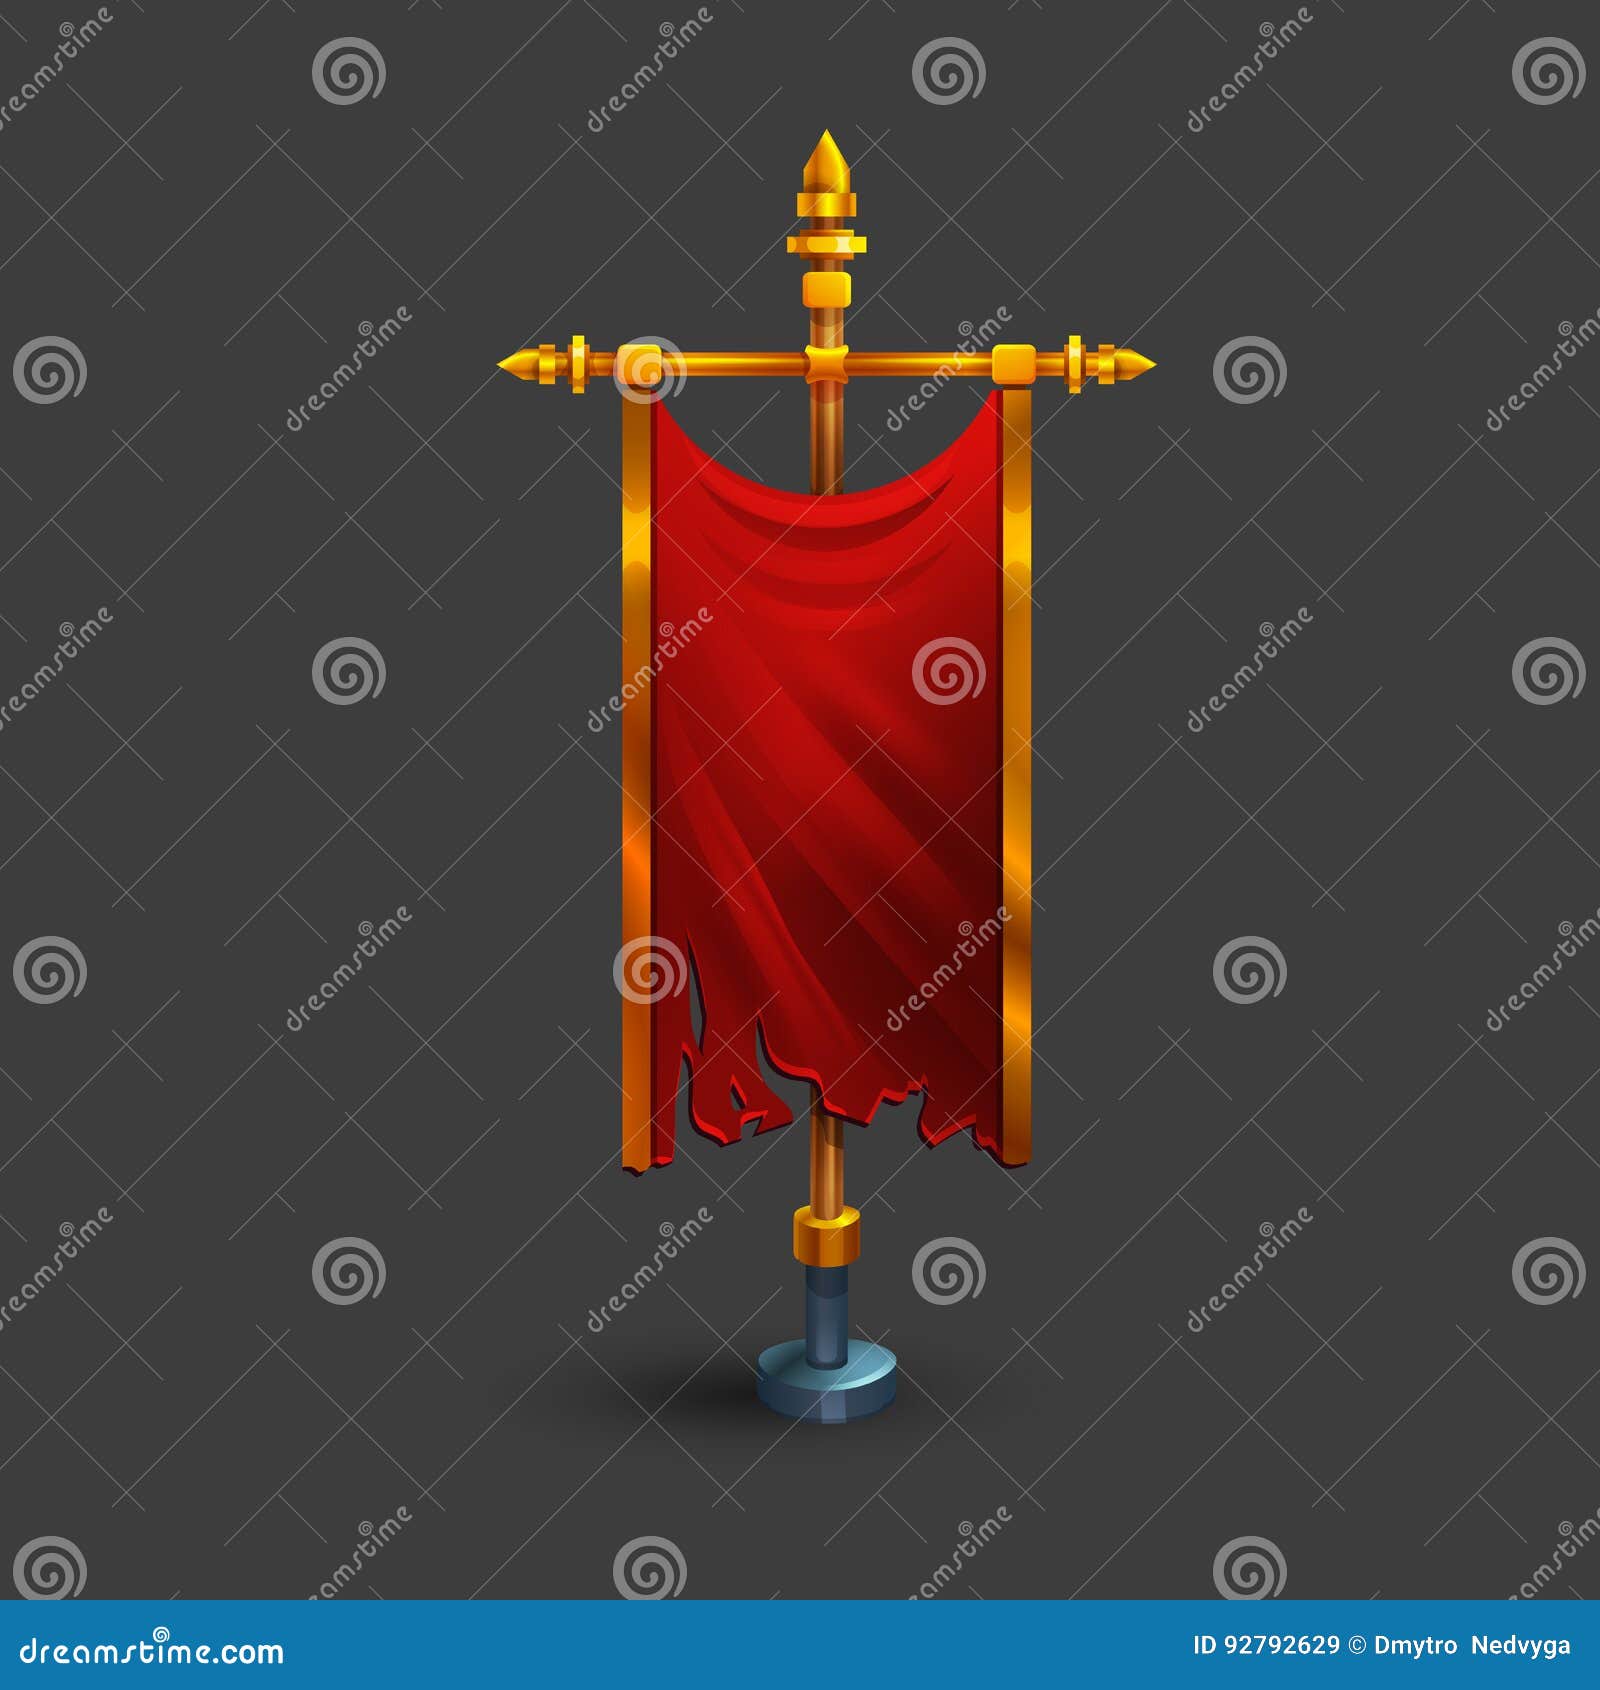 Medieval cartoon flag set game design assets Vector Image